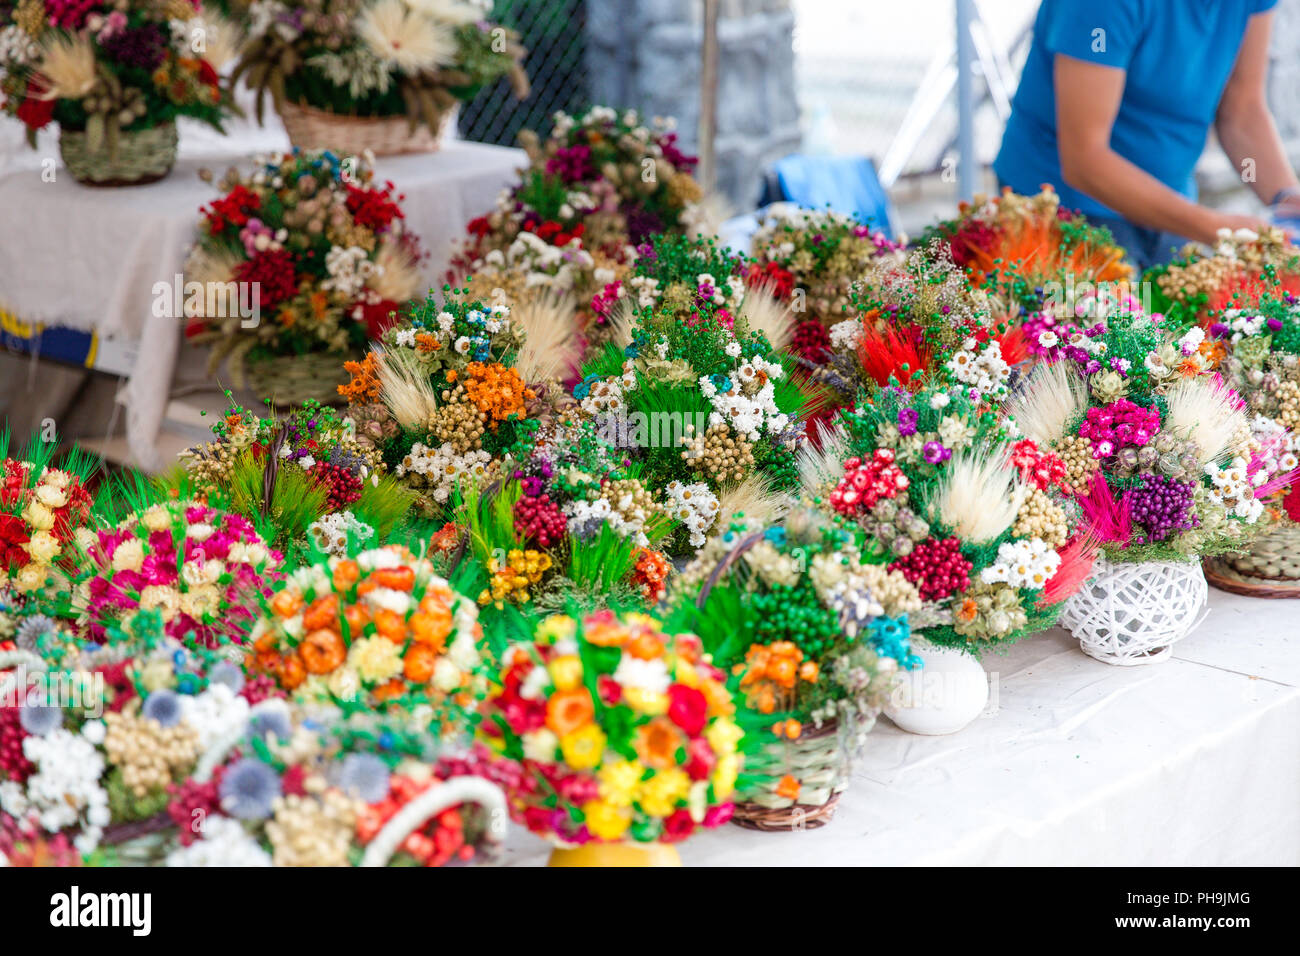 Traditionelle getrocknete Blumen Blumensträuße an der Straße Markt während der Karpaten Klimata Festival in Krosno, Polen verkauft. Stockfoto